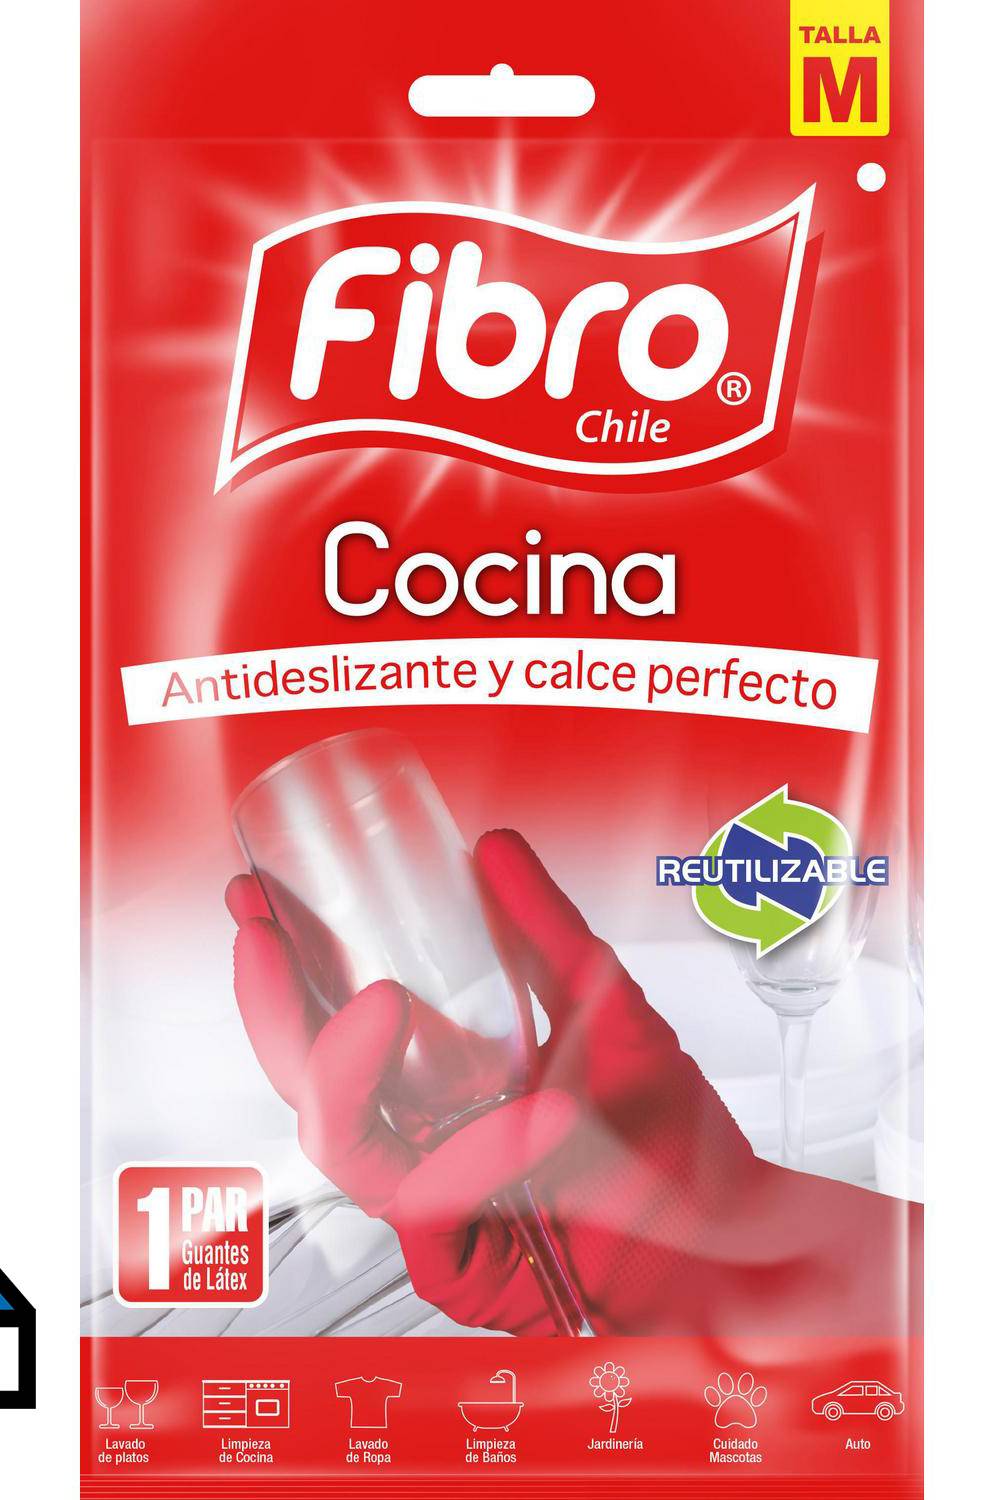 FIBRO - Guante cocina M látex rojo